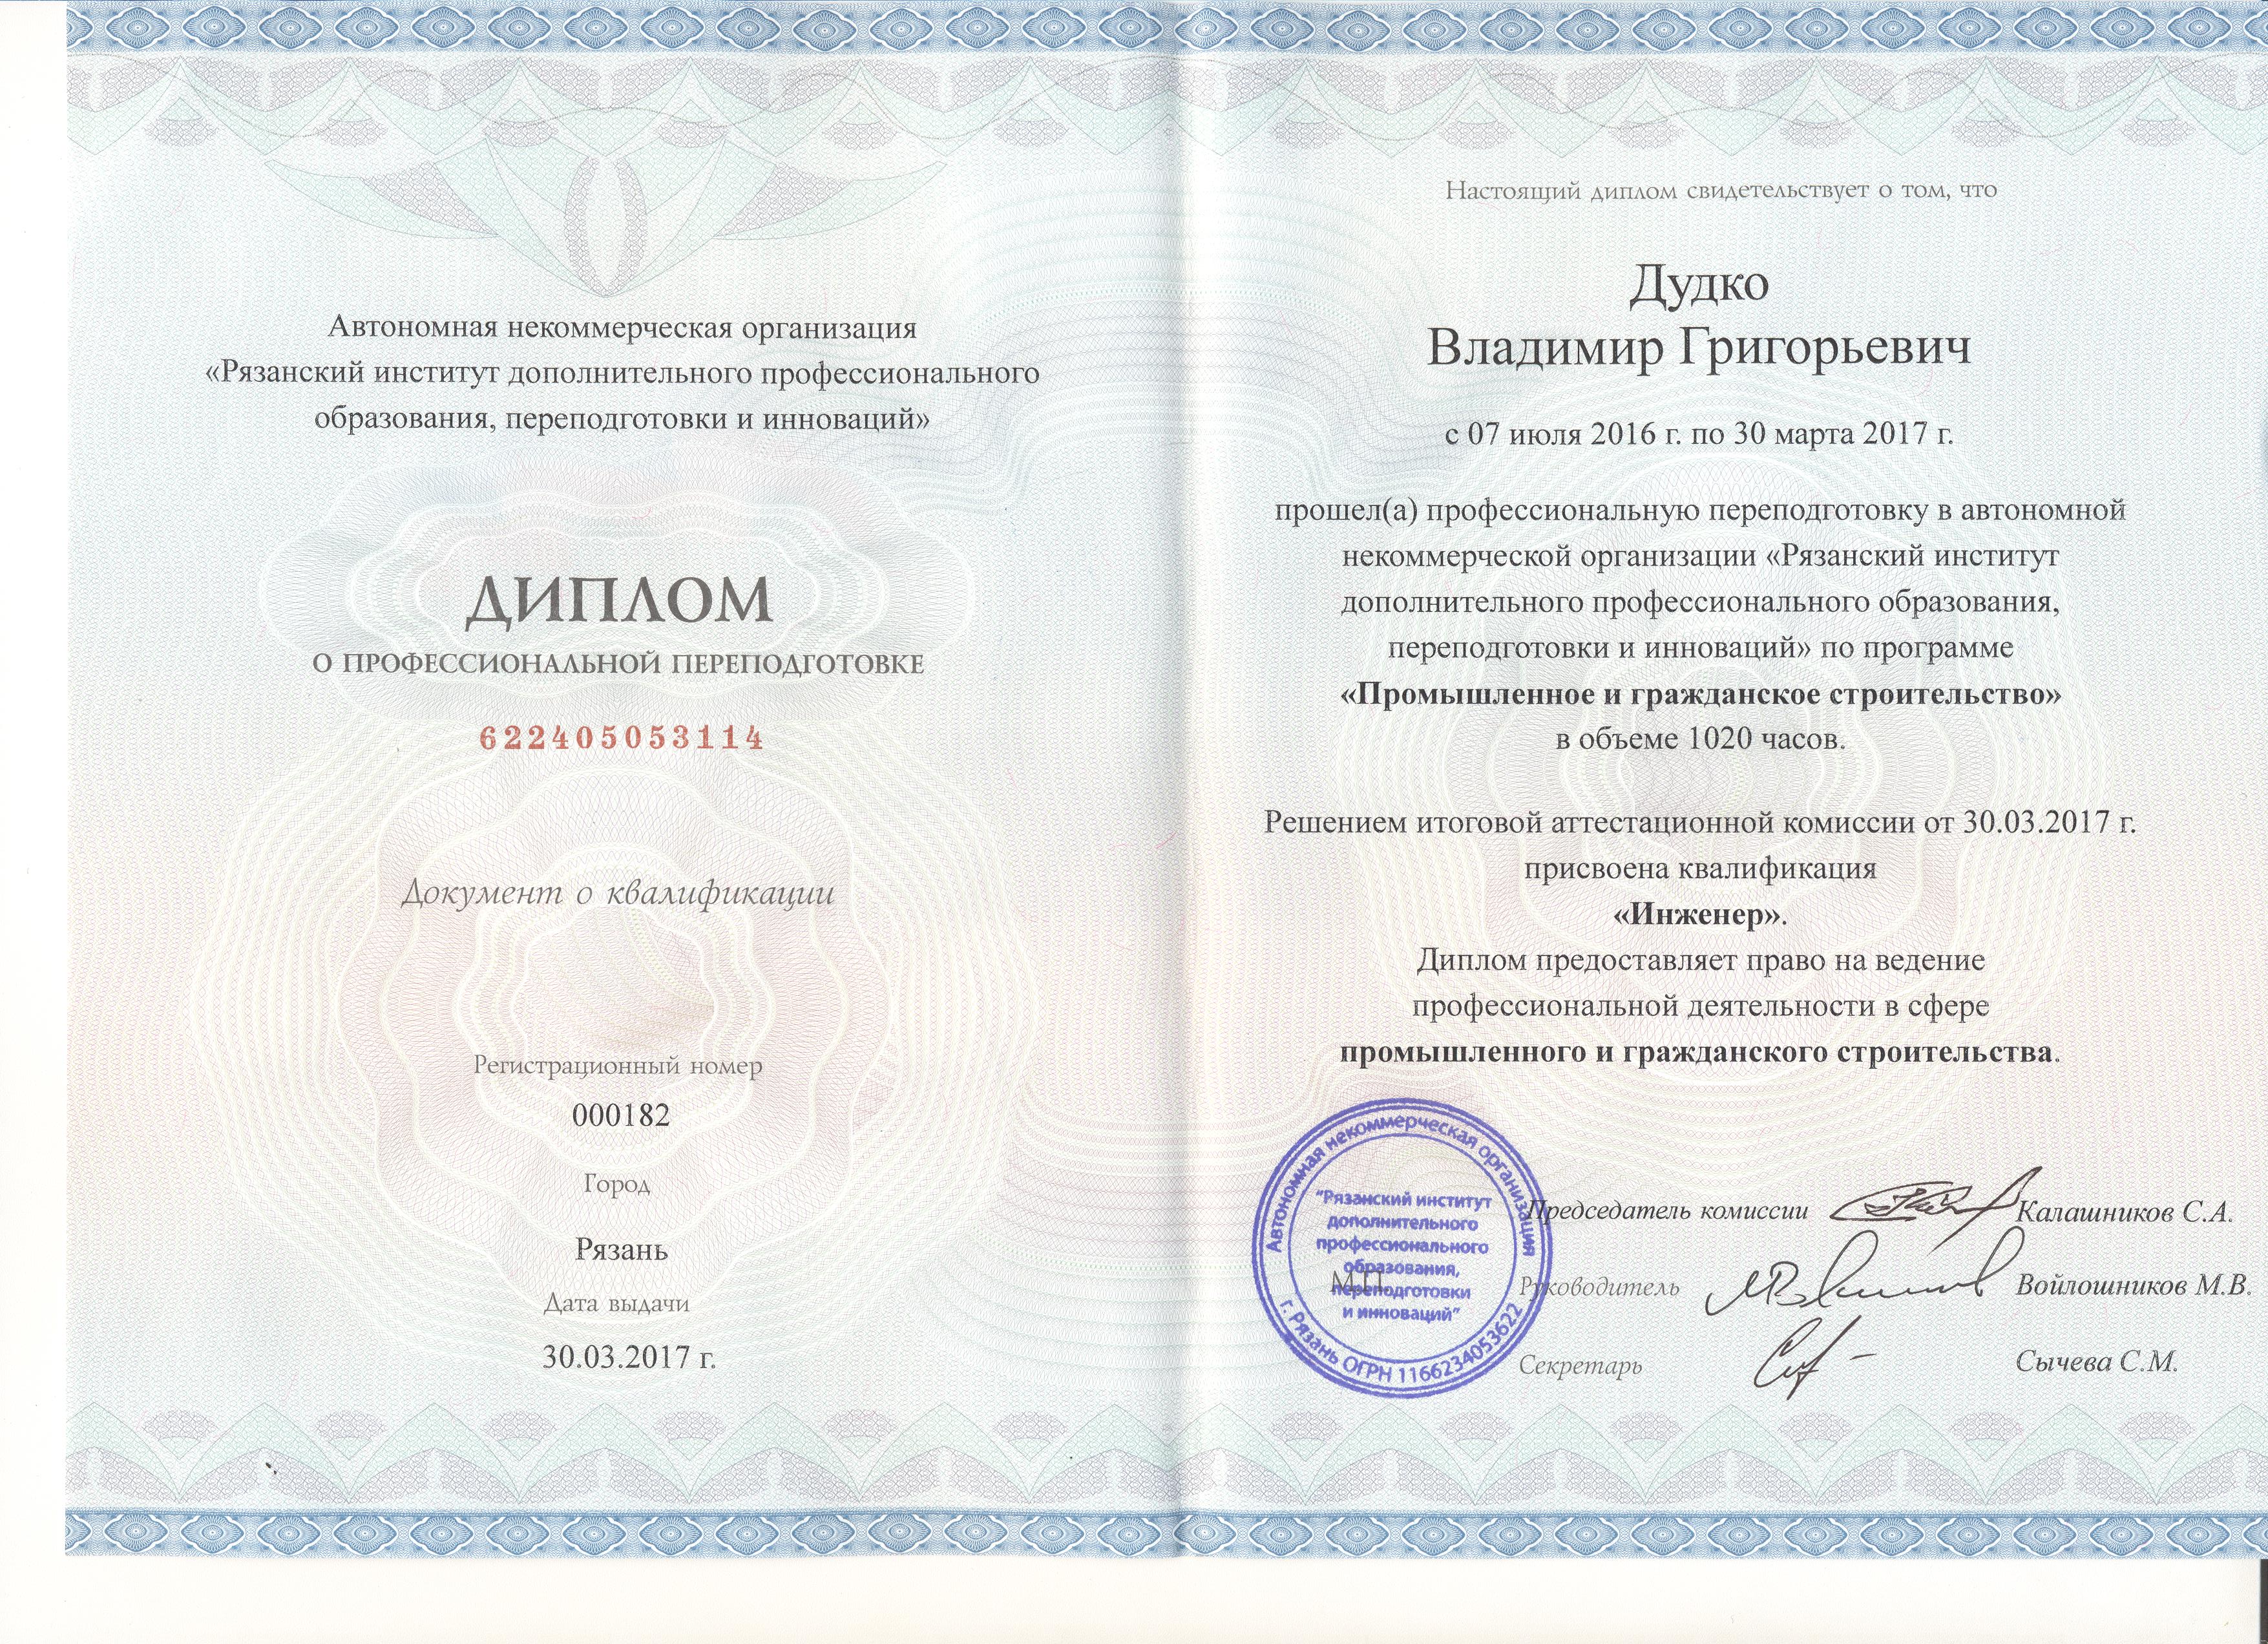 Уральский институт повышения квалификации и переподготовки диплом